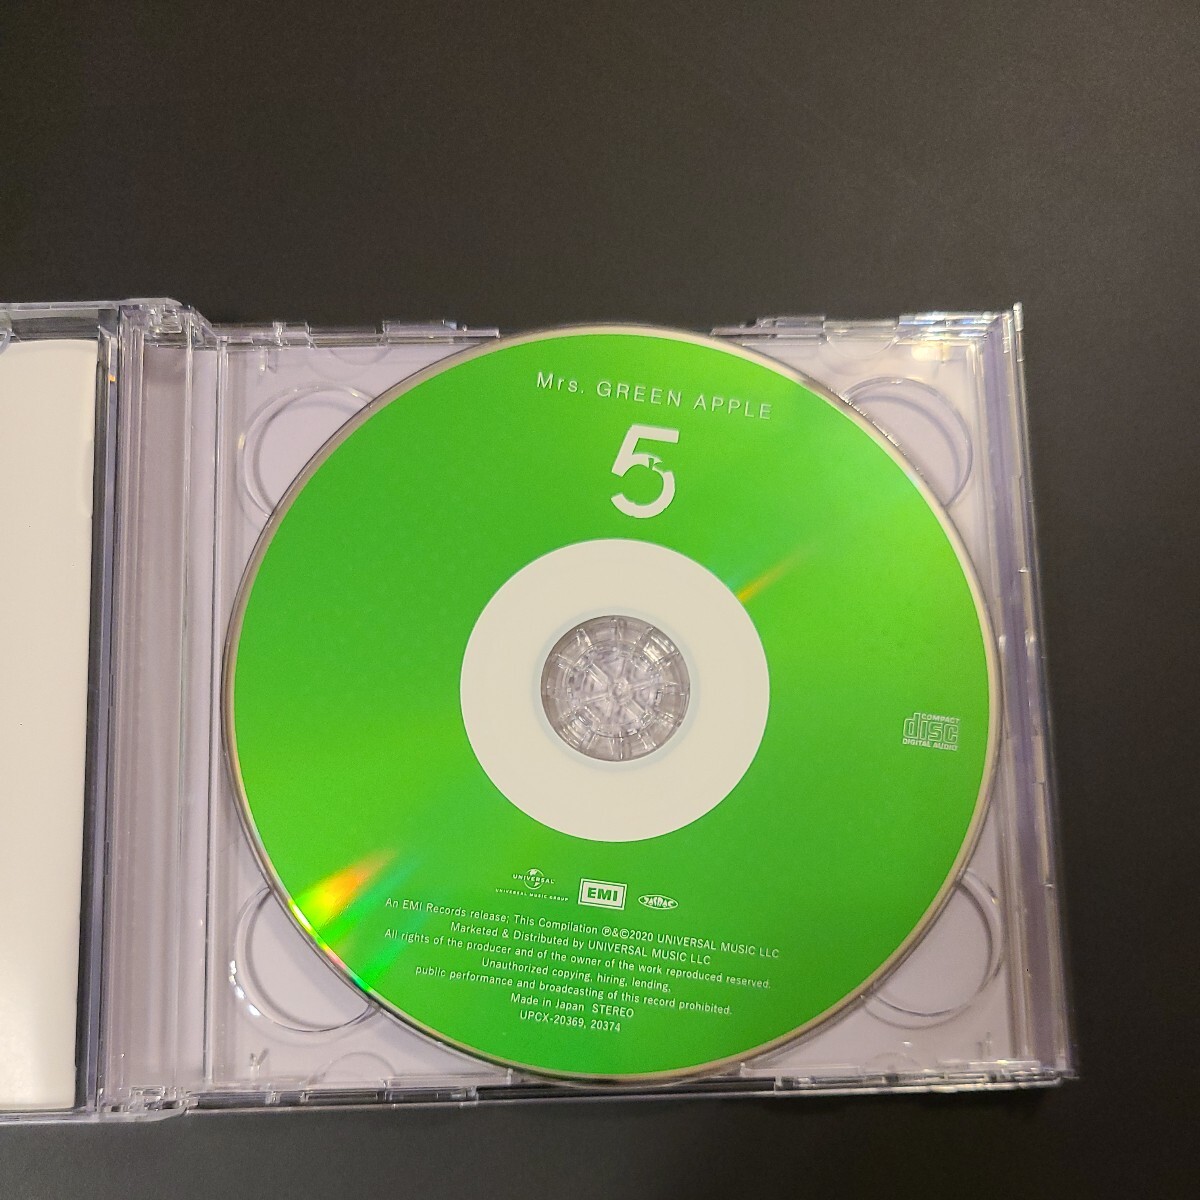 【初回】Mrs.GREEN APPLE 5 CD DVD アルバム ミセス 初回 初回限定盤 LIVE アボイドノート speaking インフェルノの画像3